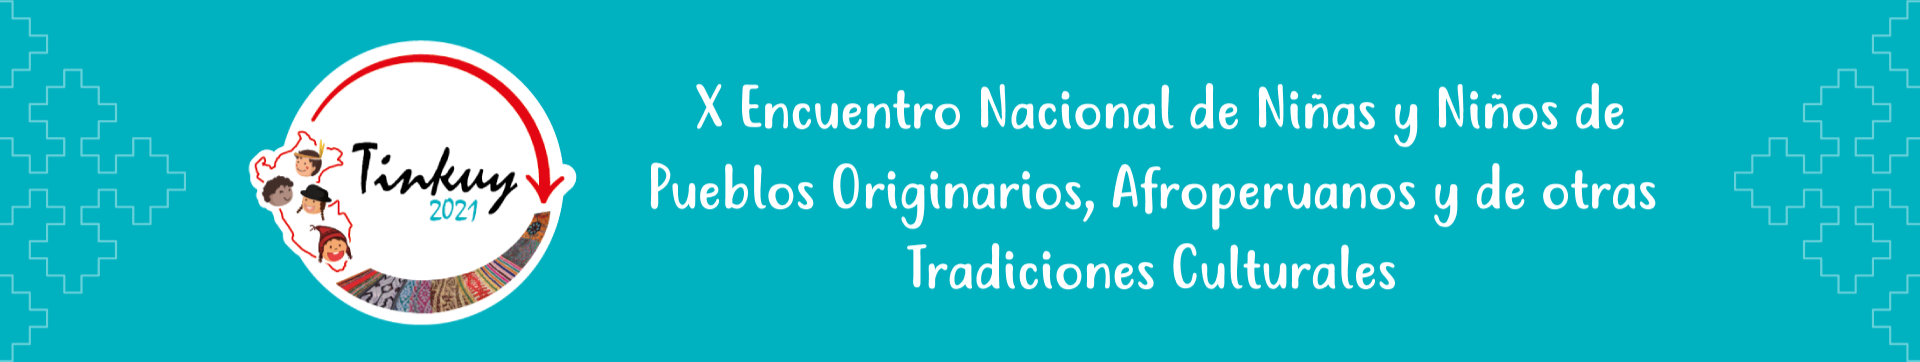 Banner IX Encuentro Nacional de Niñas y Niños de Pueblos Originarios, Afroperuanos y de otras Tradiciones Culturales